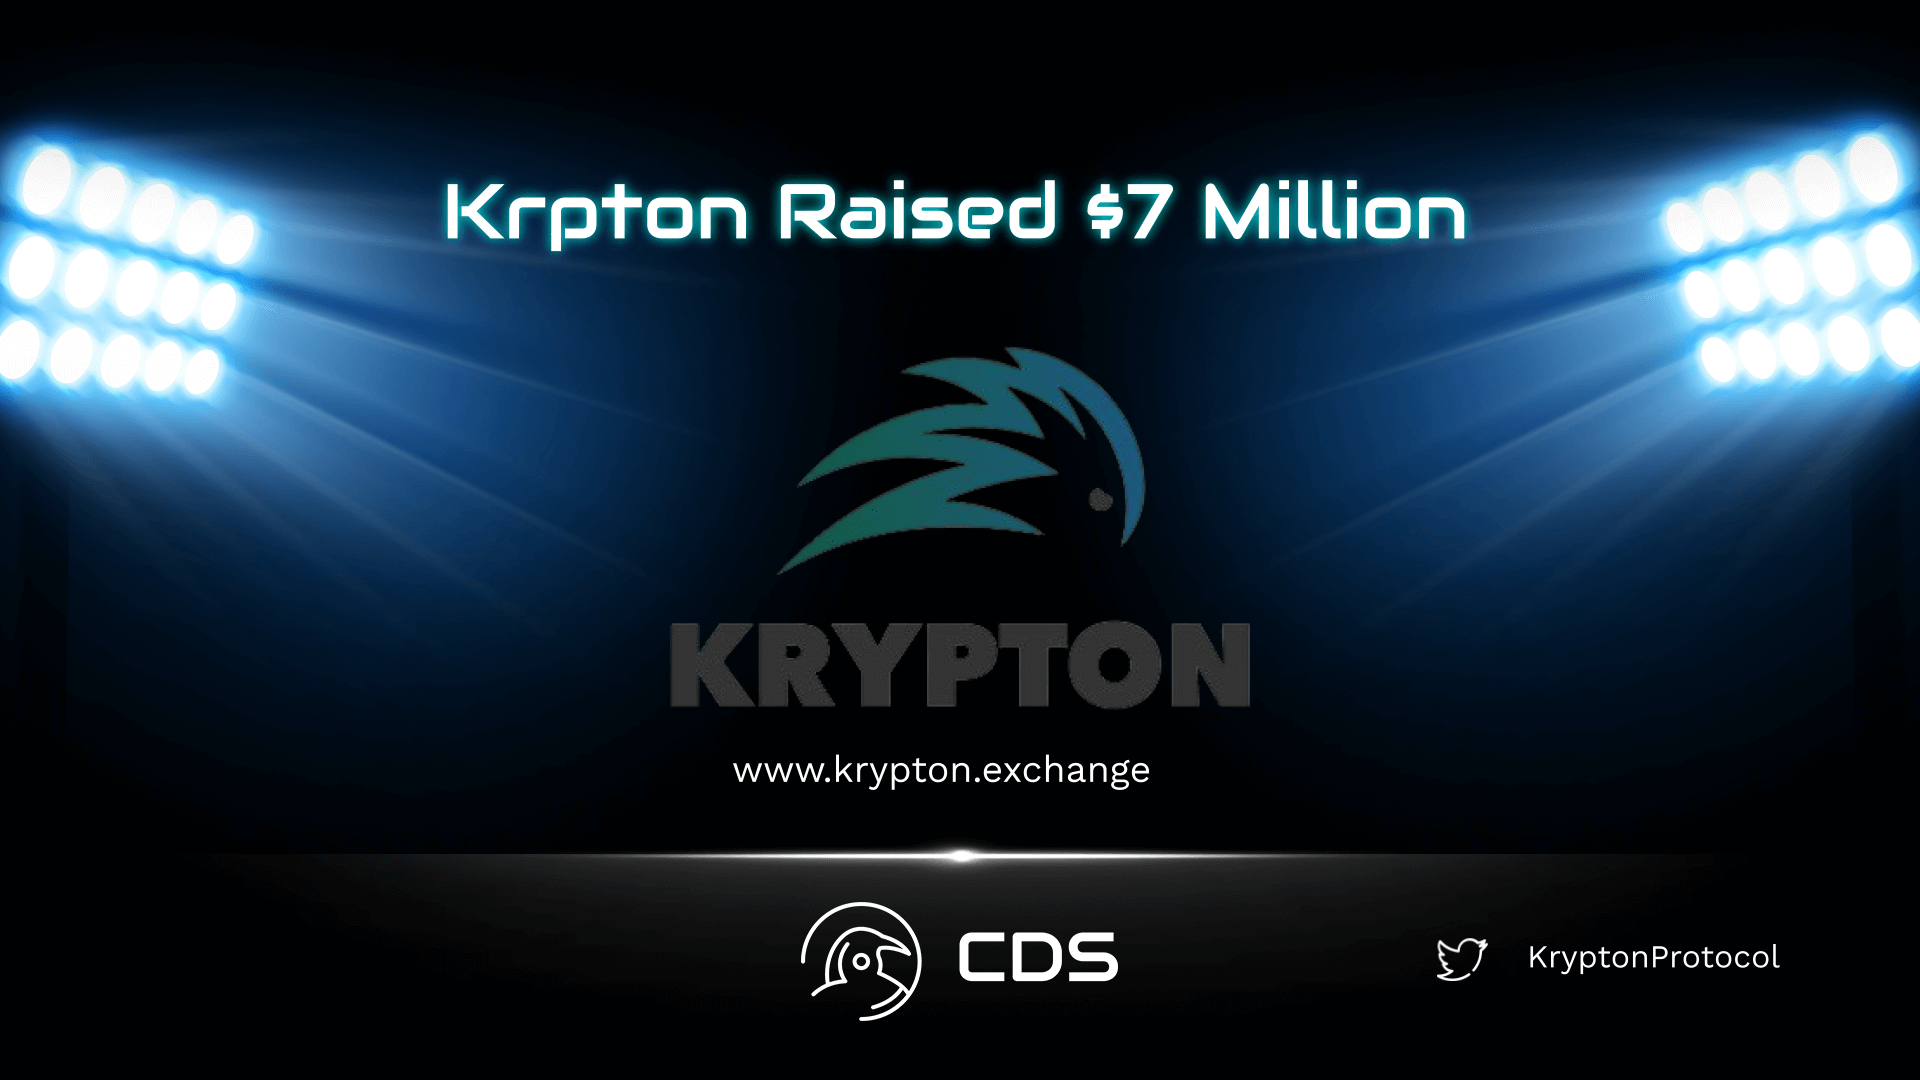 Krypton Raised $7 Million